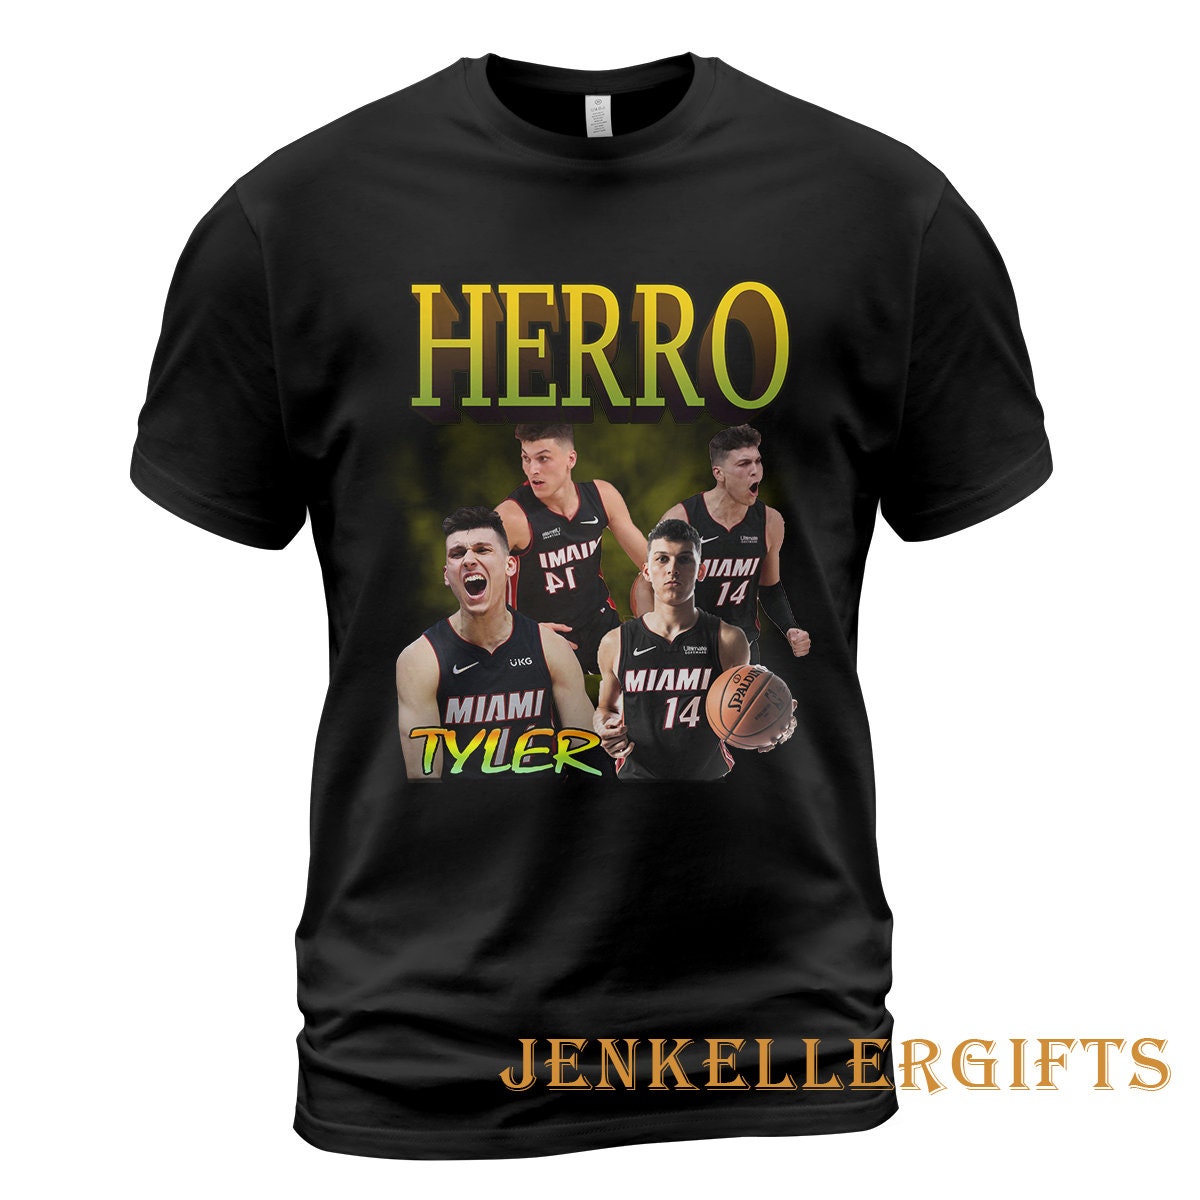 Discover Tyler Herro T-Shirt, Tyler Herro Tshirt Merchandise Professional Basketball Player